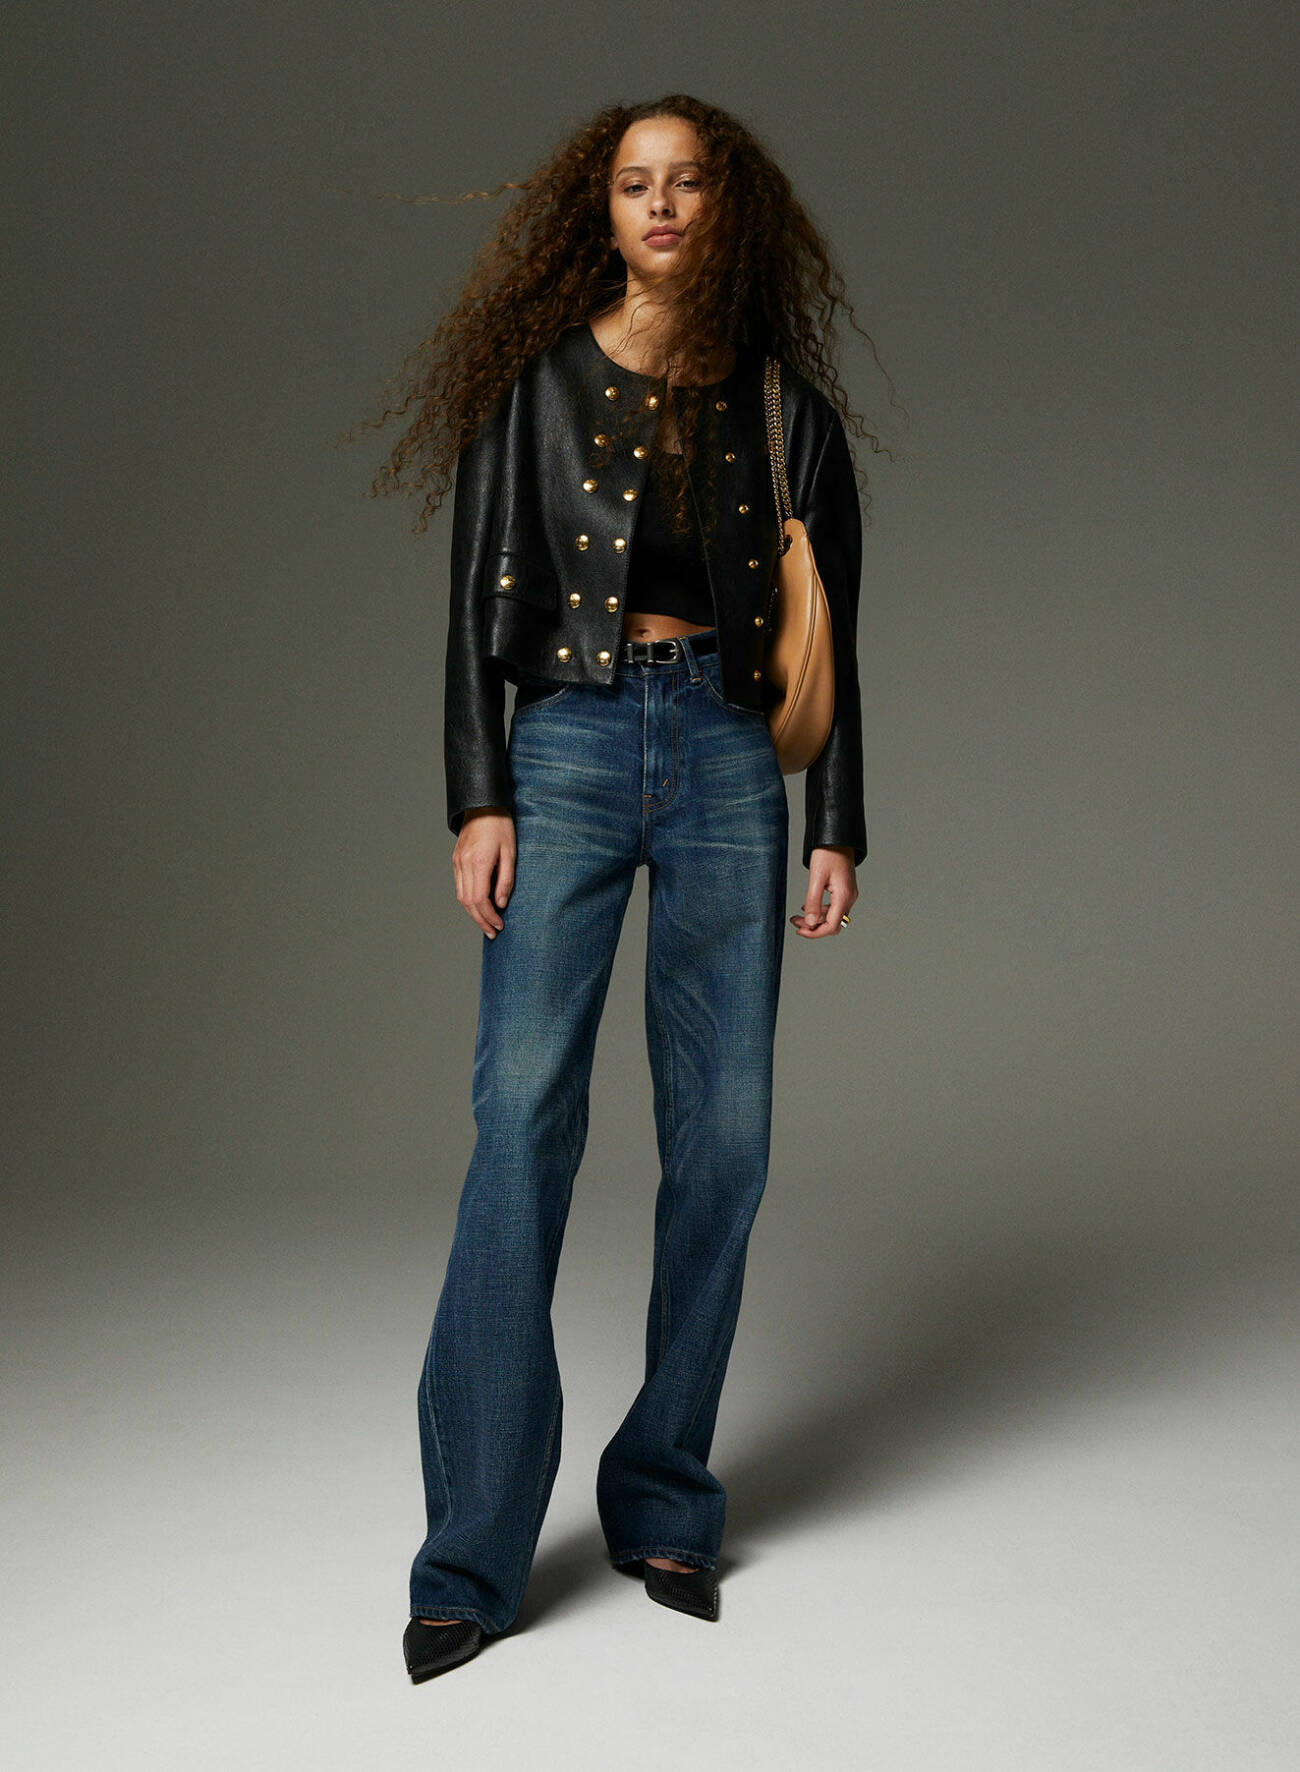 Modellen har på sig svart jacka och topp, mörkblå jeans och svarta skor, allt från Celine by Hedi Slimane